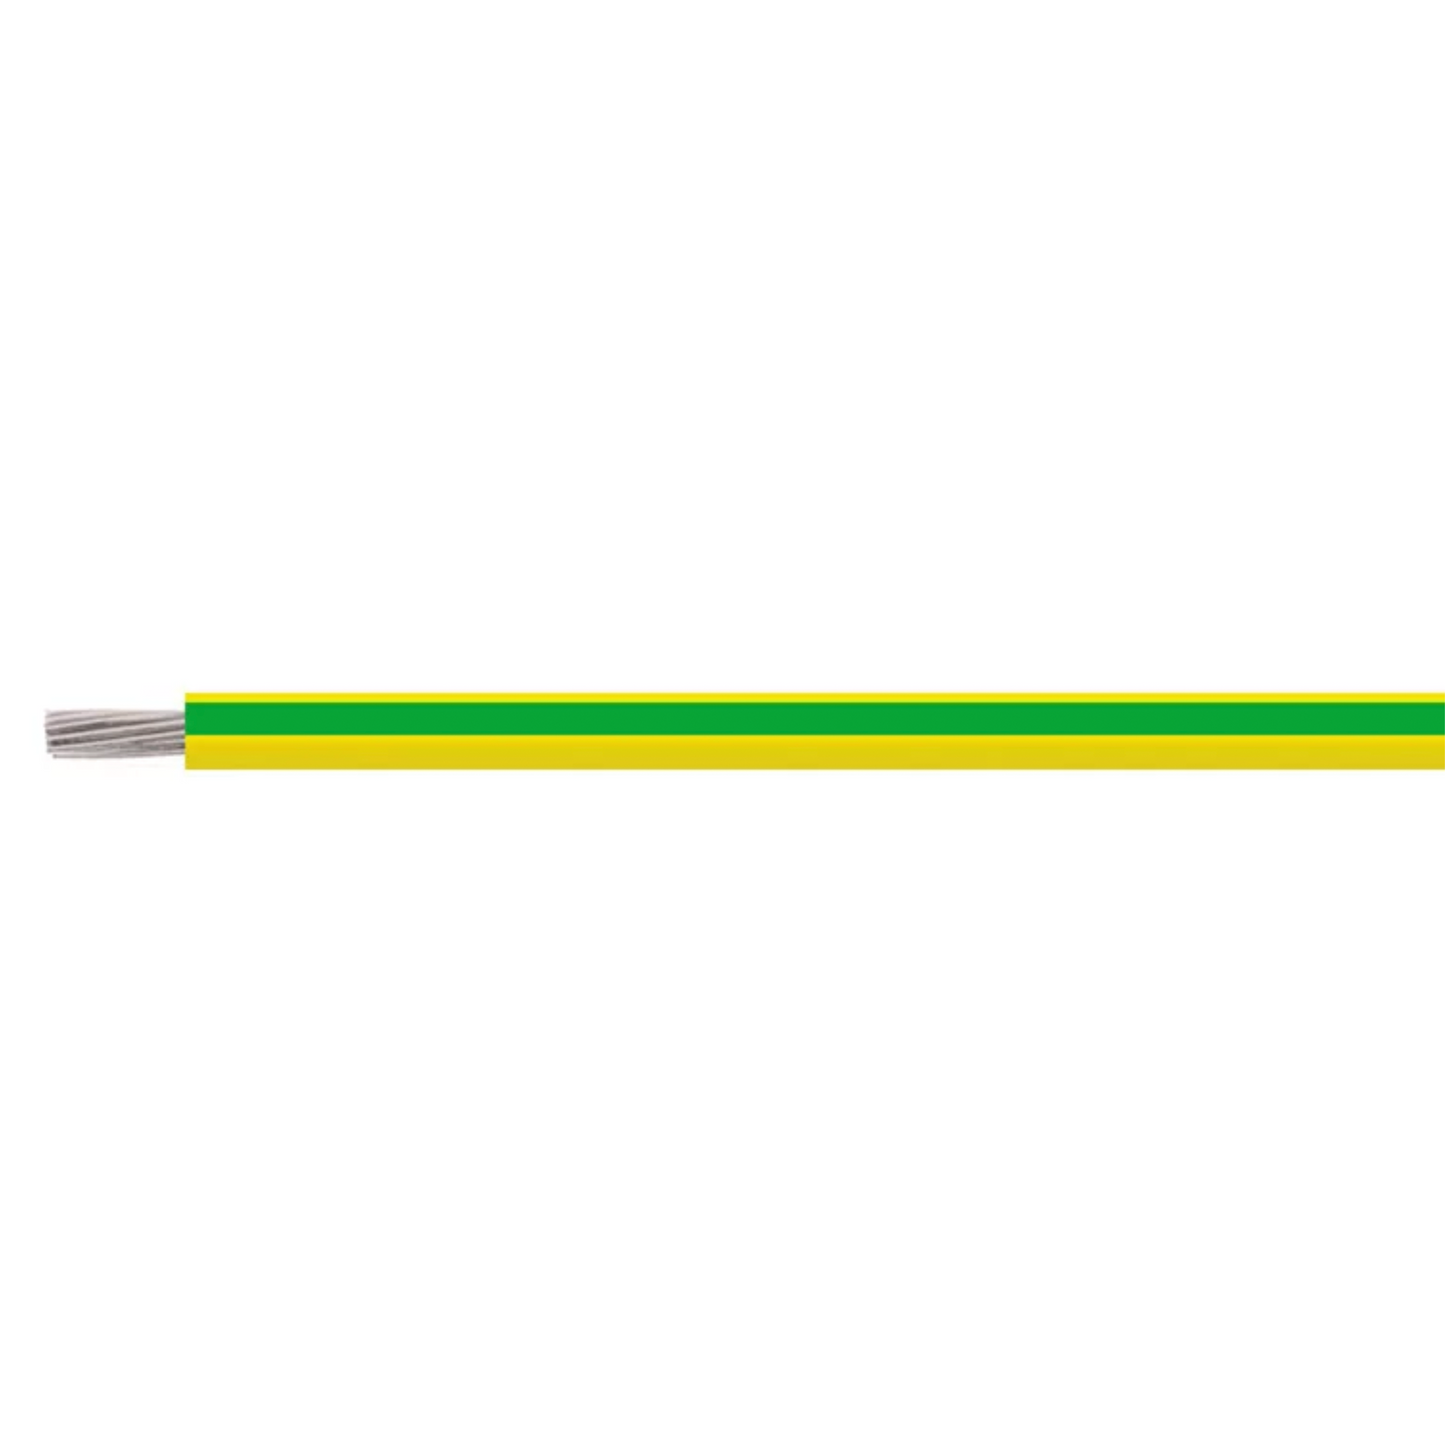 Erdungskabel HELUTHERM® 145 grün-gelb 1 G 6 mm² 500m